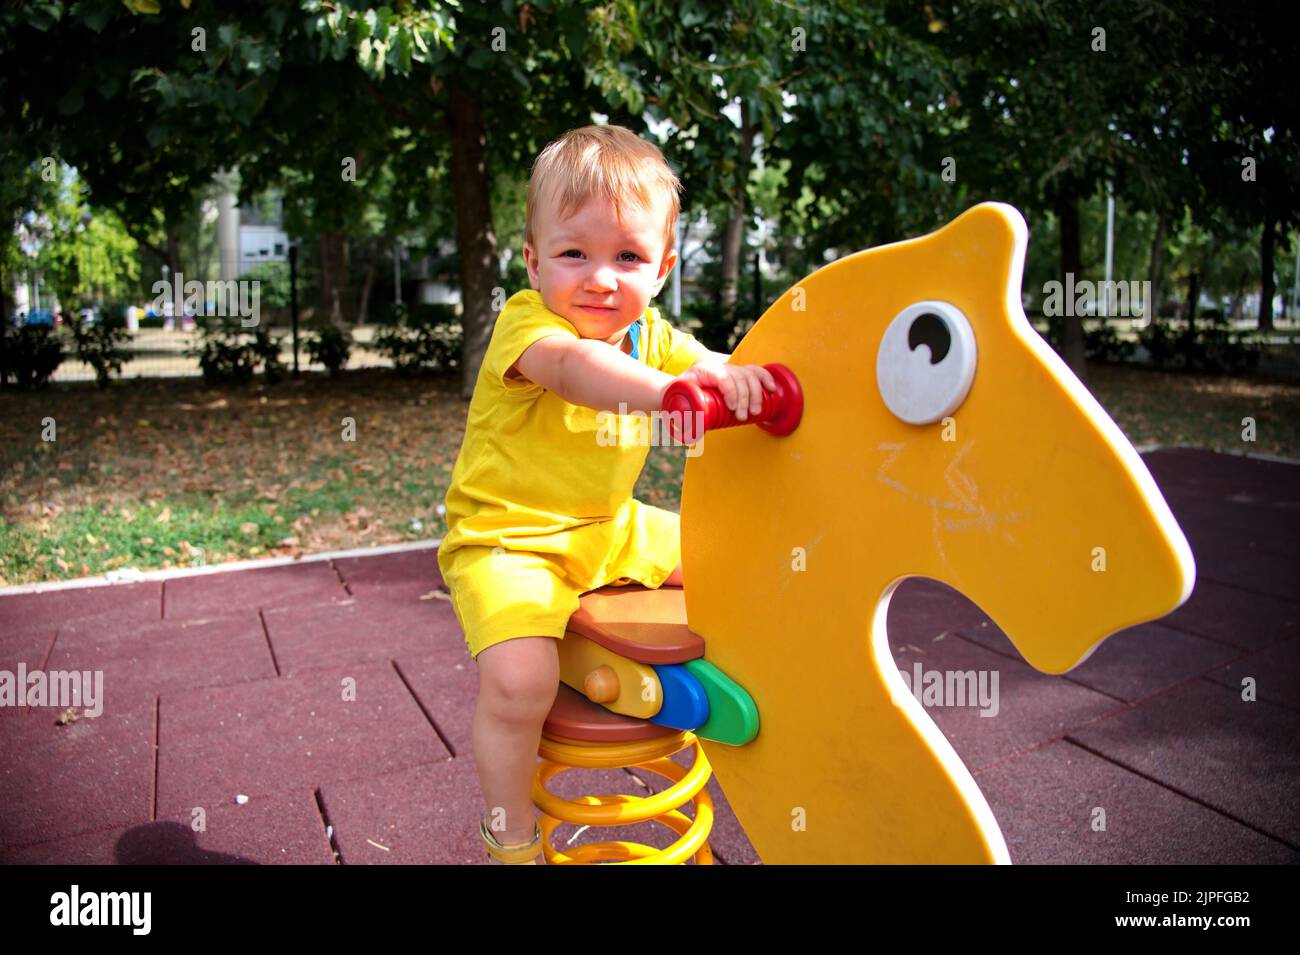 Porträt eines süßen kleinen Jungen auf dem Spielplatz Stockfoto